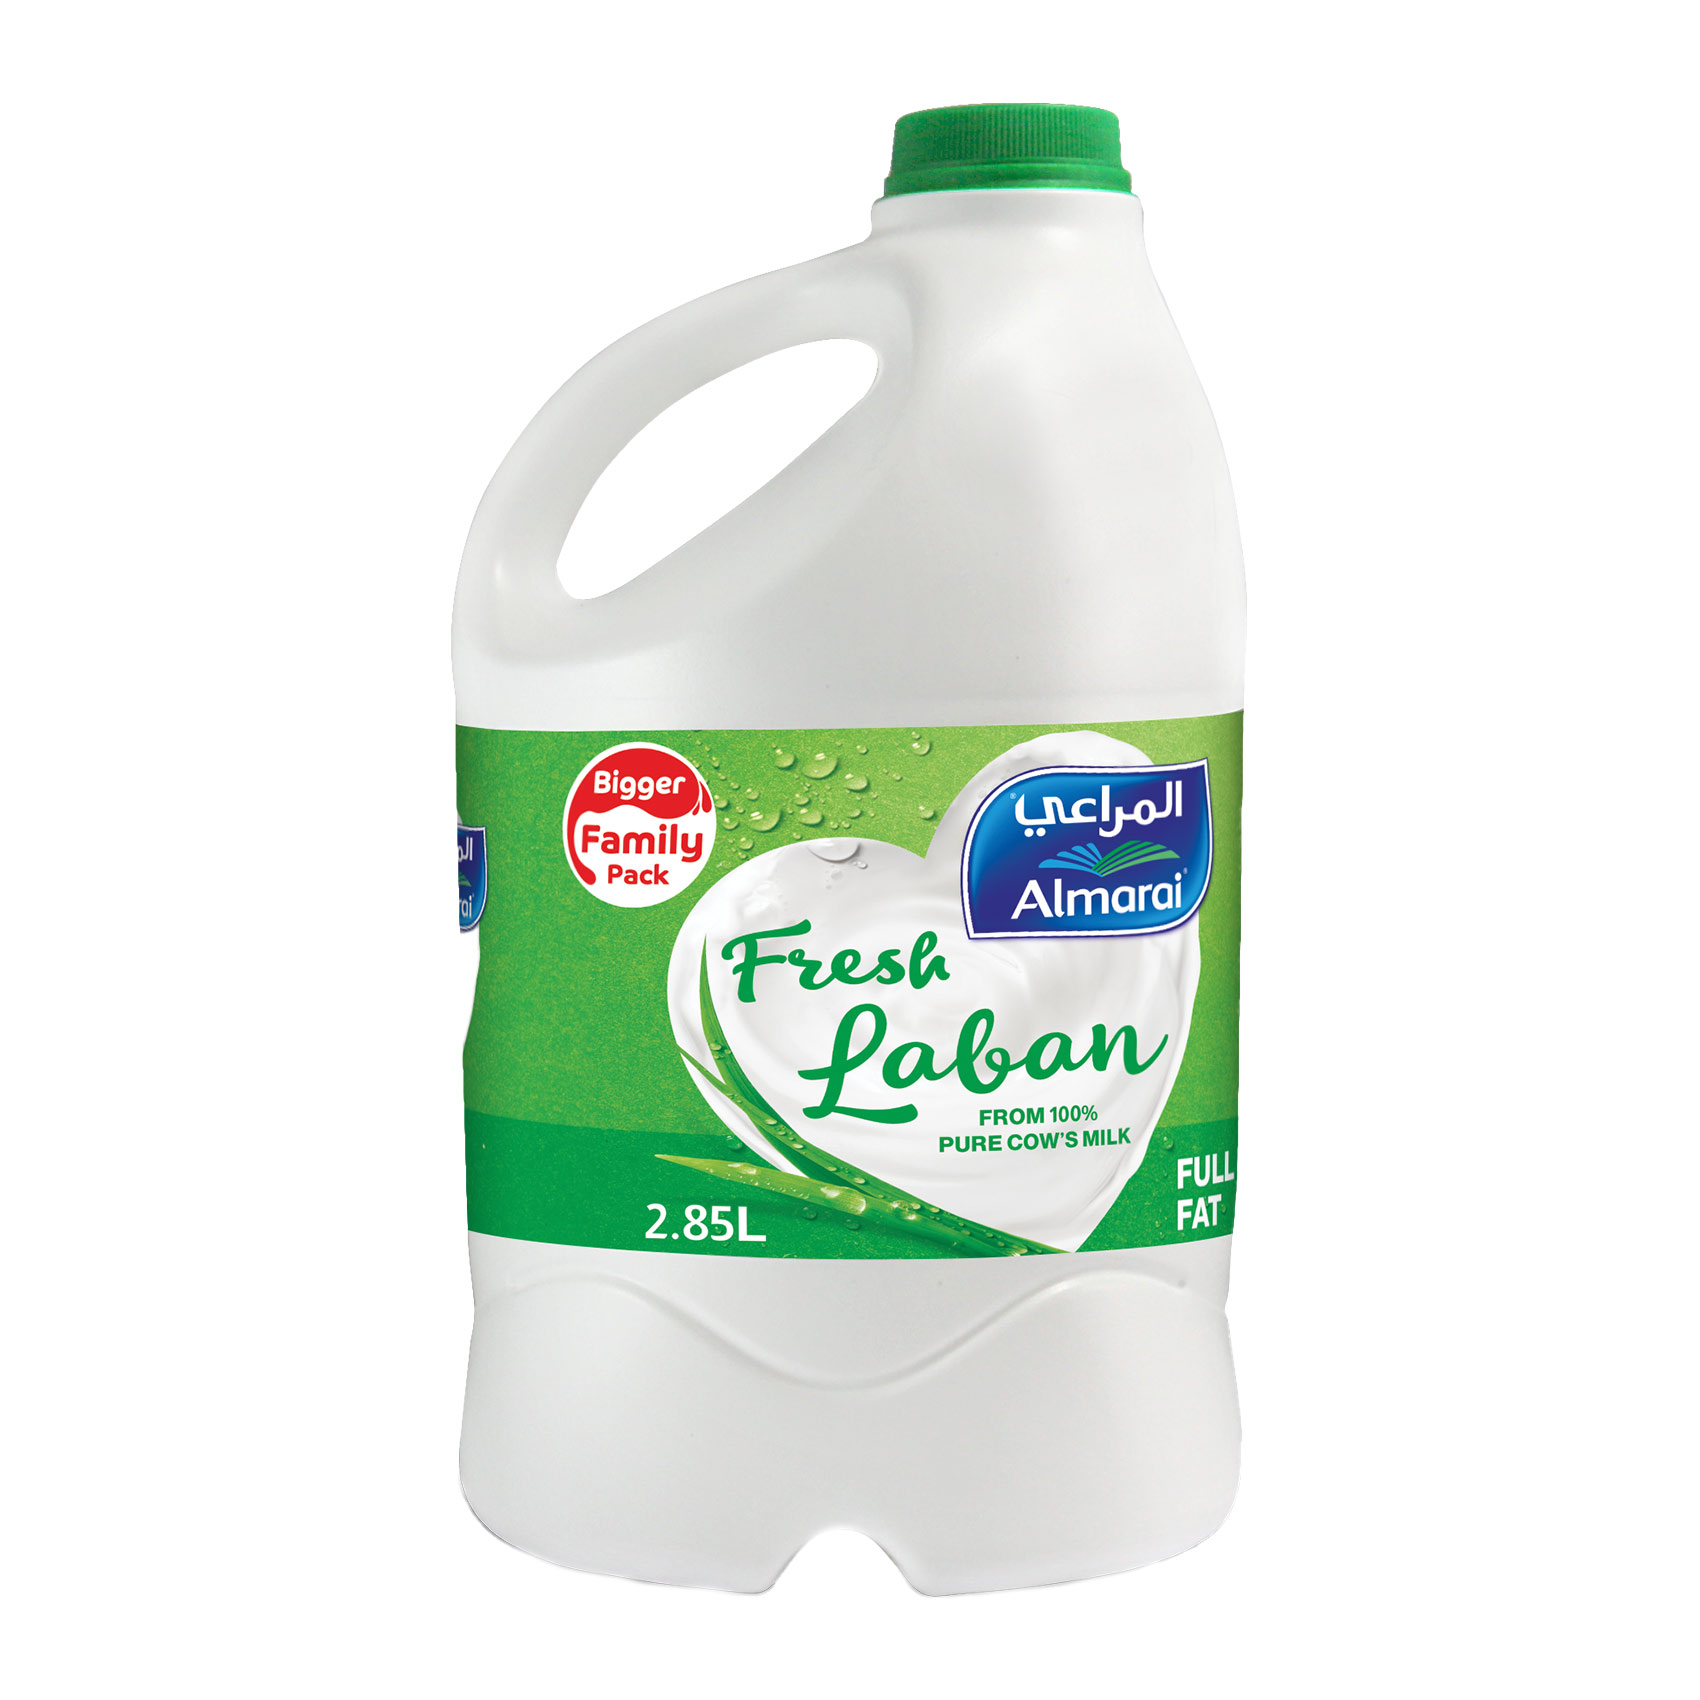 Almarai Full Fat Fresh Laban 2.85L